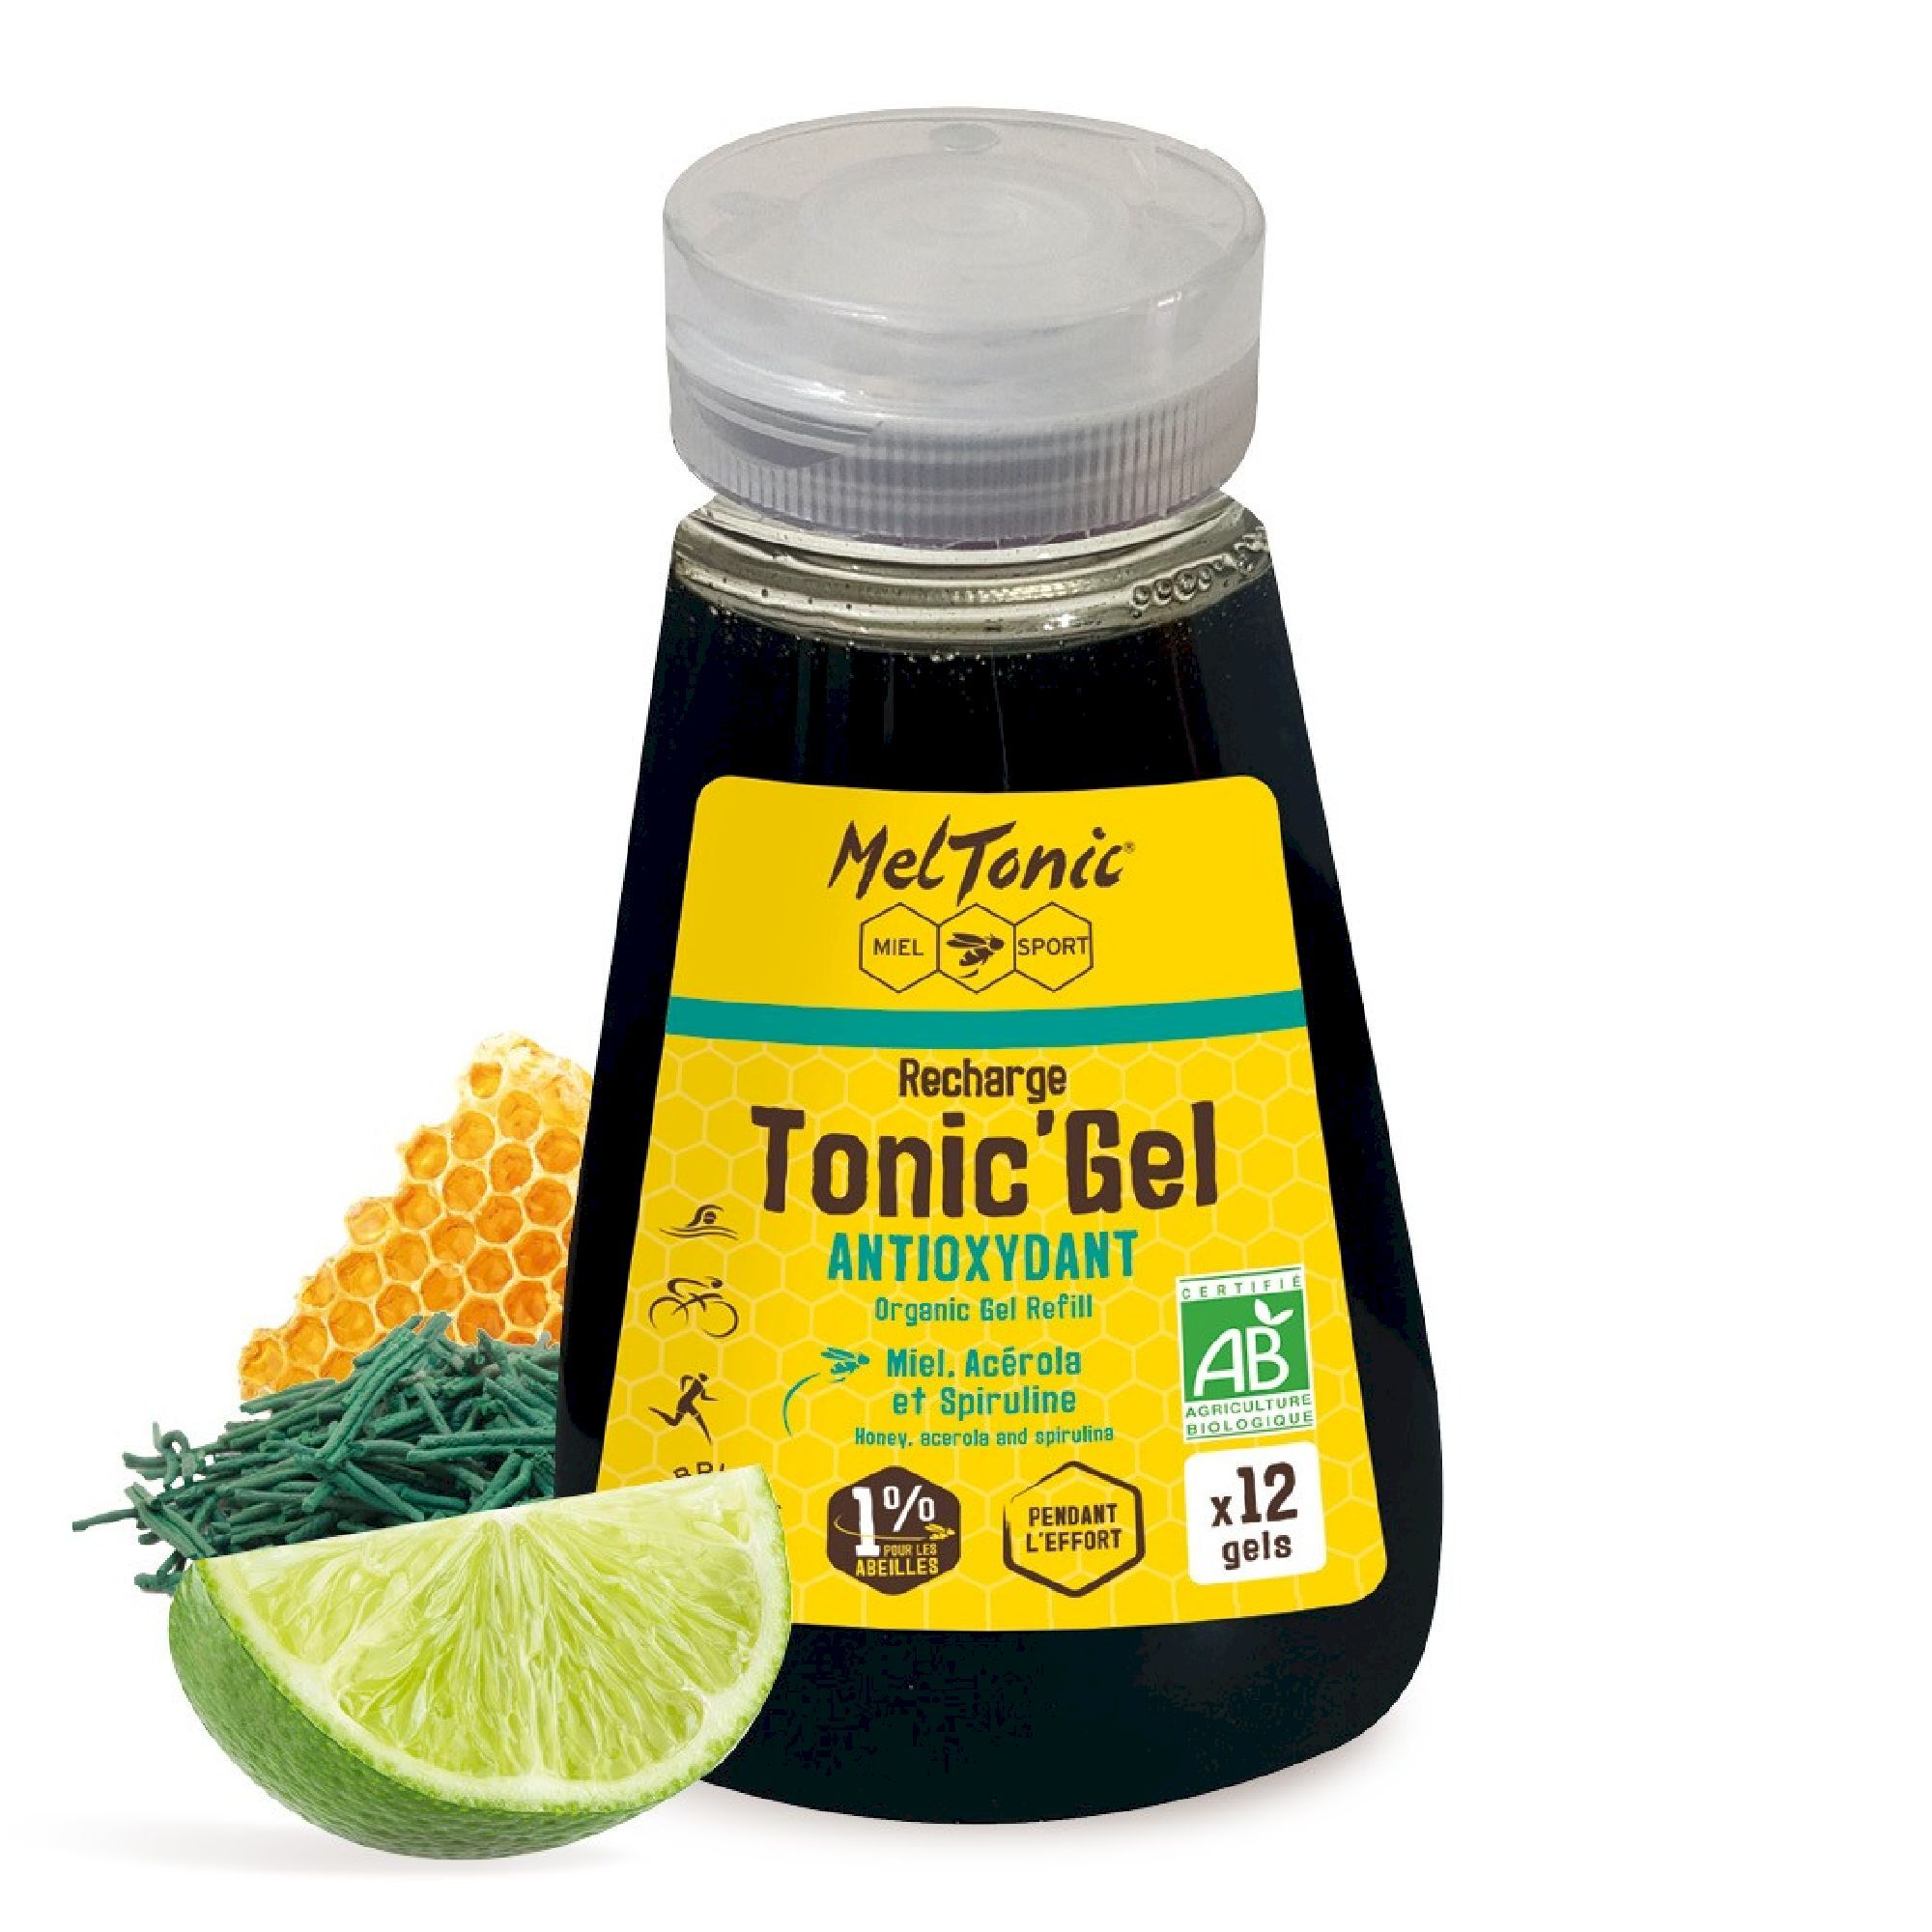 Meltonic Tonic Gel Bio Antioxydant - Recharge Eco - Energiegel